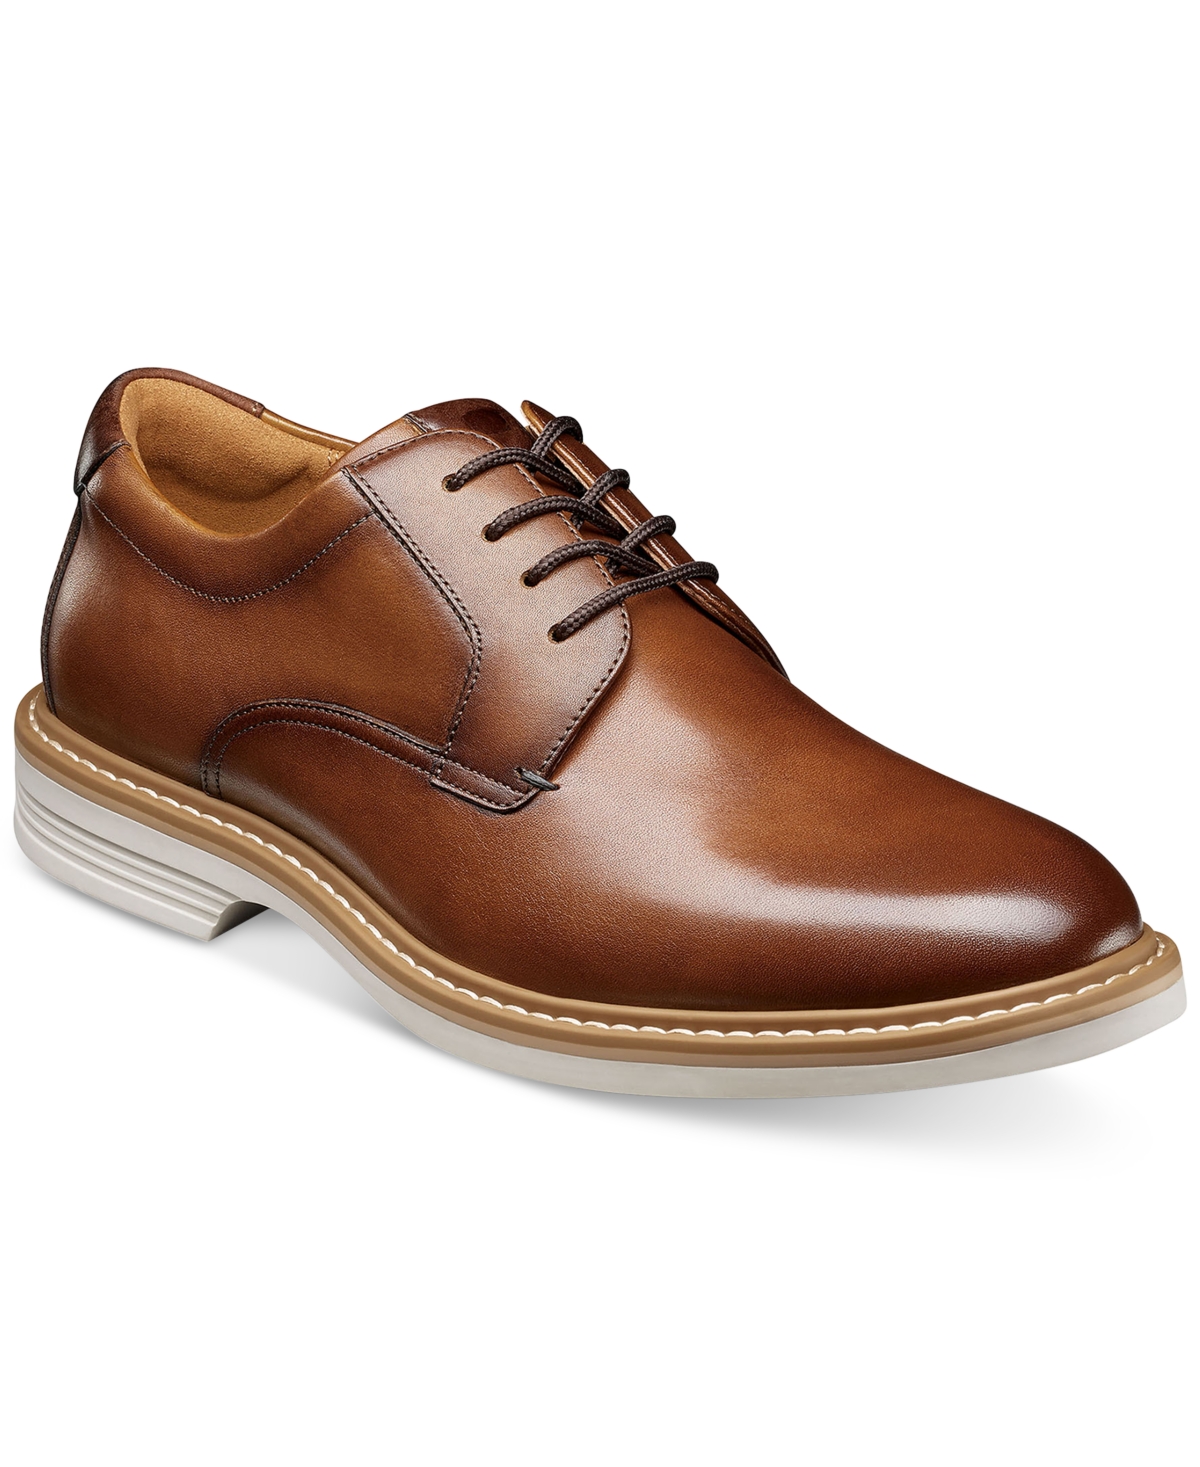 Men's Norfolk Leather Plain Toe Oxford - Cognac